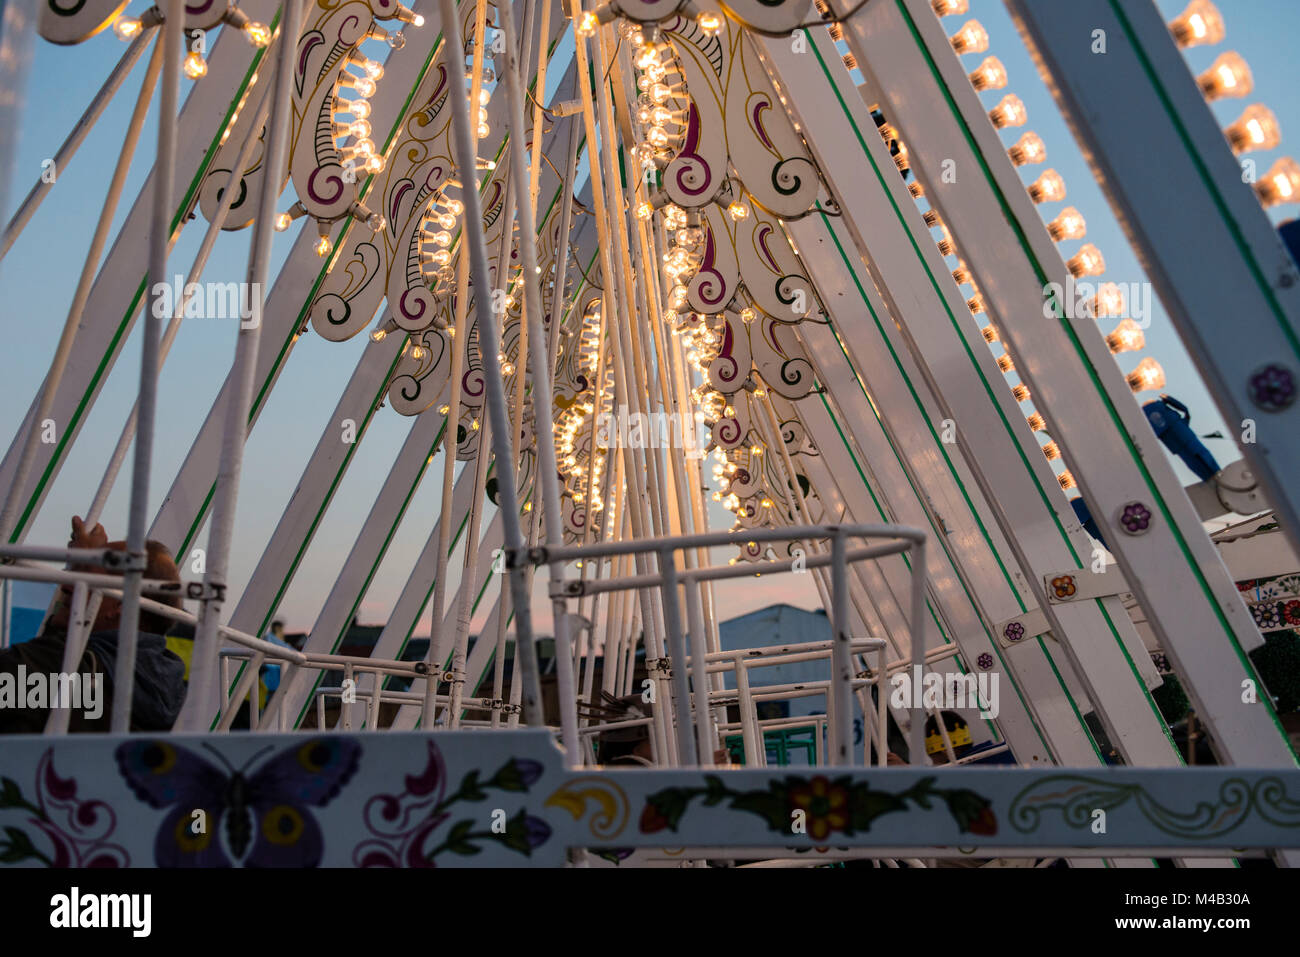 Oktoberfest,'Wiesn',Munich,swing boats,detail, Stock Photo